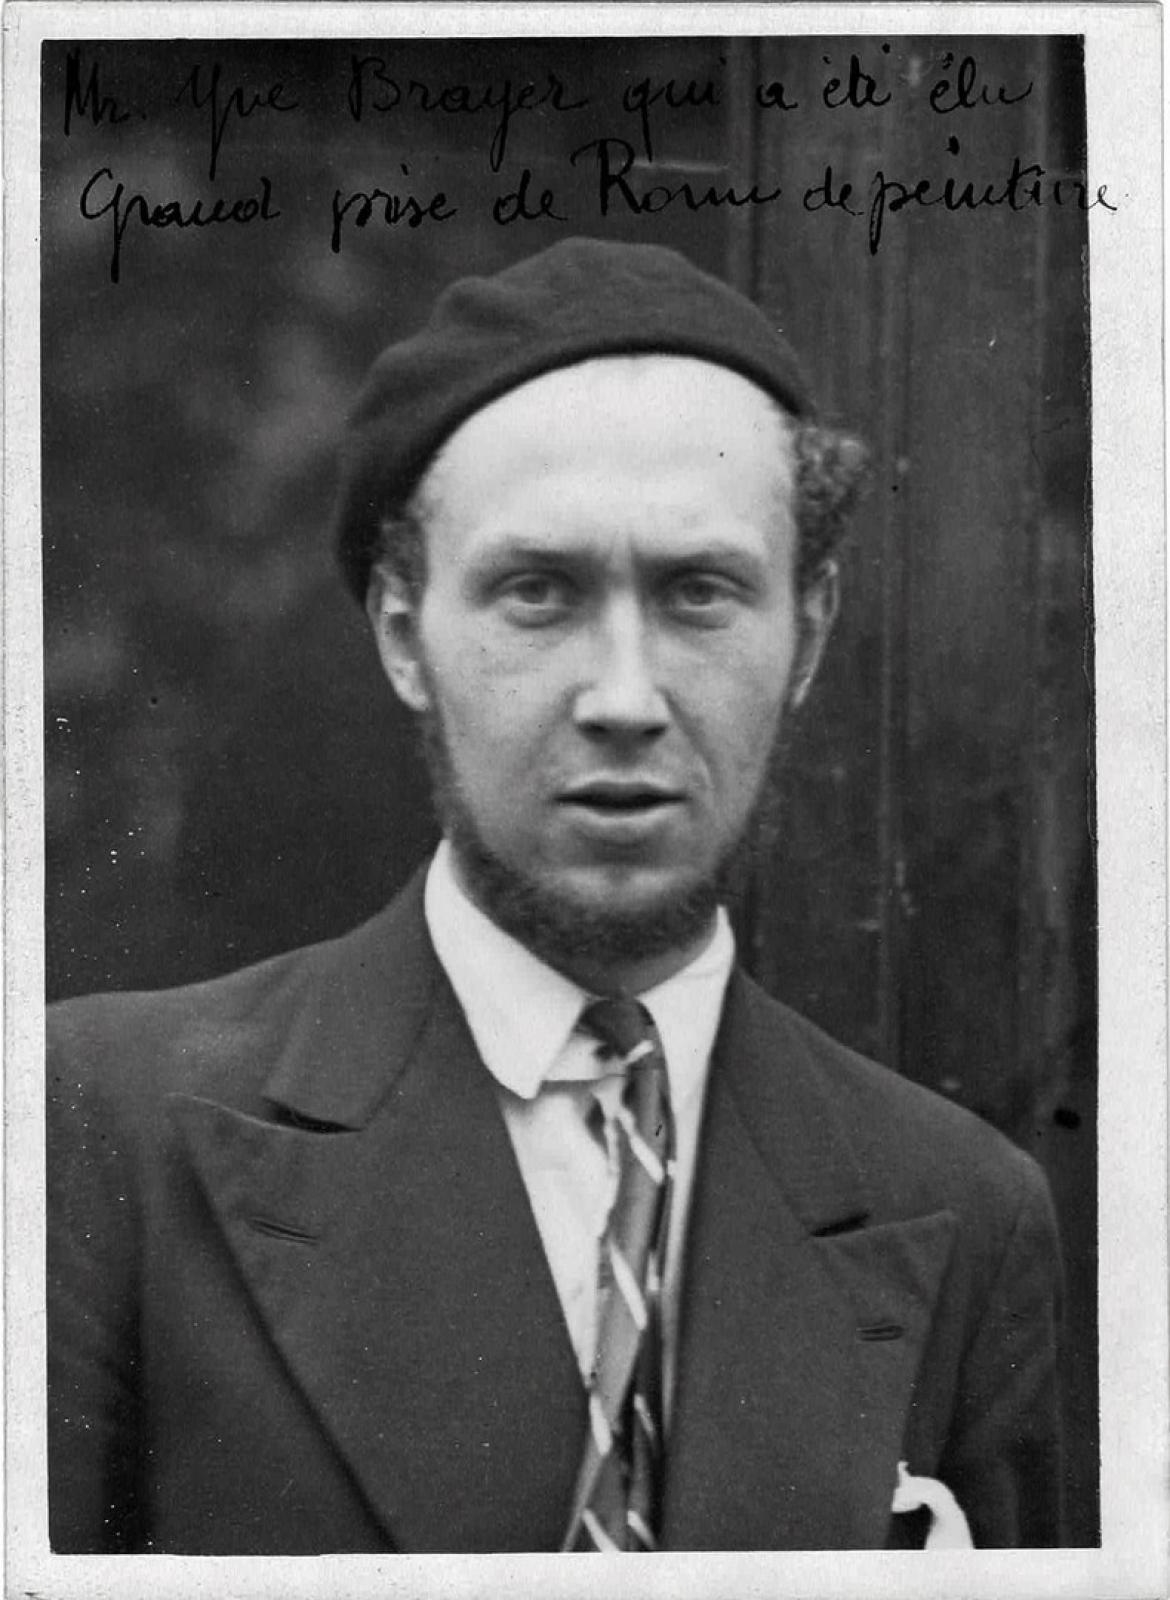 "Mr. Yves Brayer who was elected Grand Prix de Rome de Peinture" by Henri Manuel, 1930